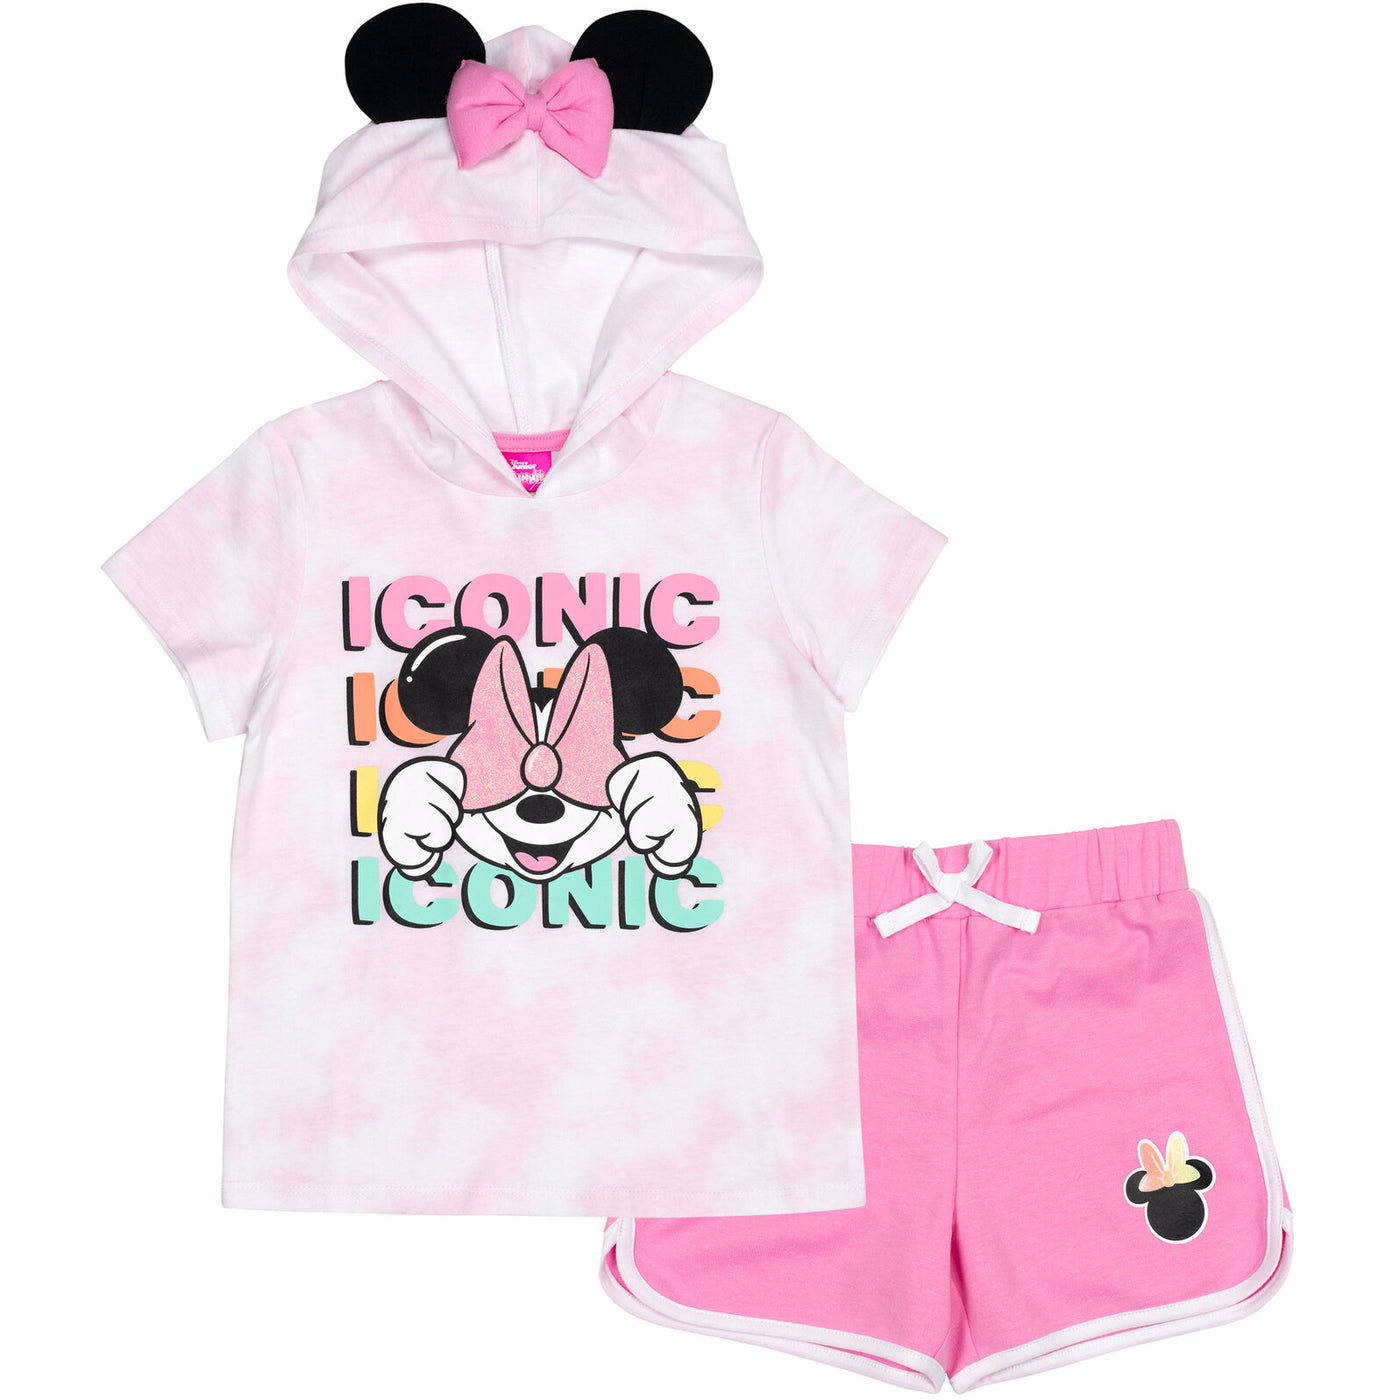 Camiseta con capucha de Minnie Mouse y pantalones cortos de delfín